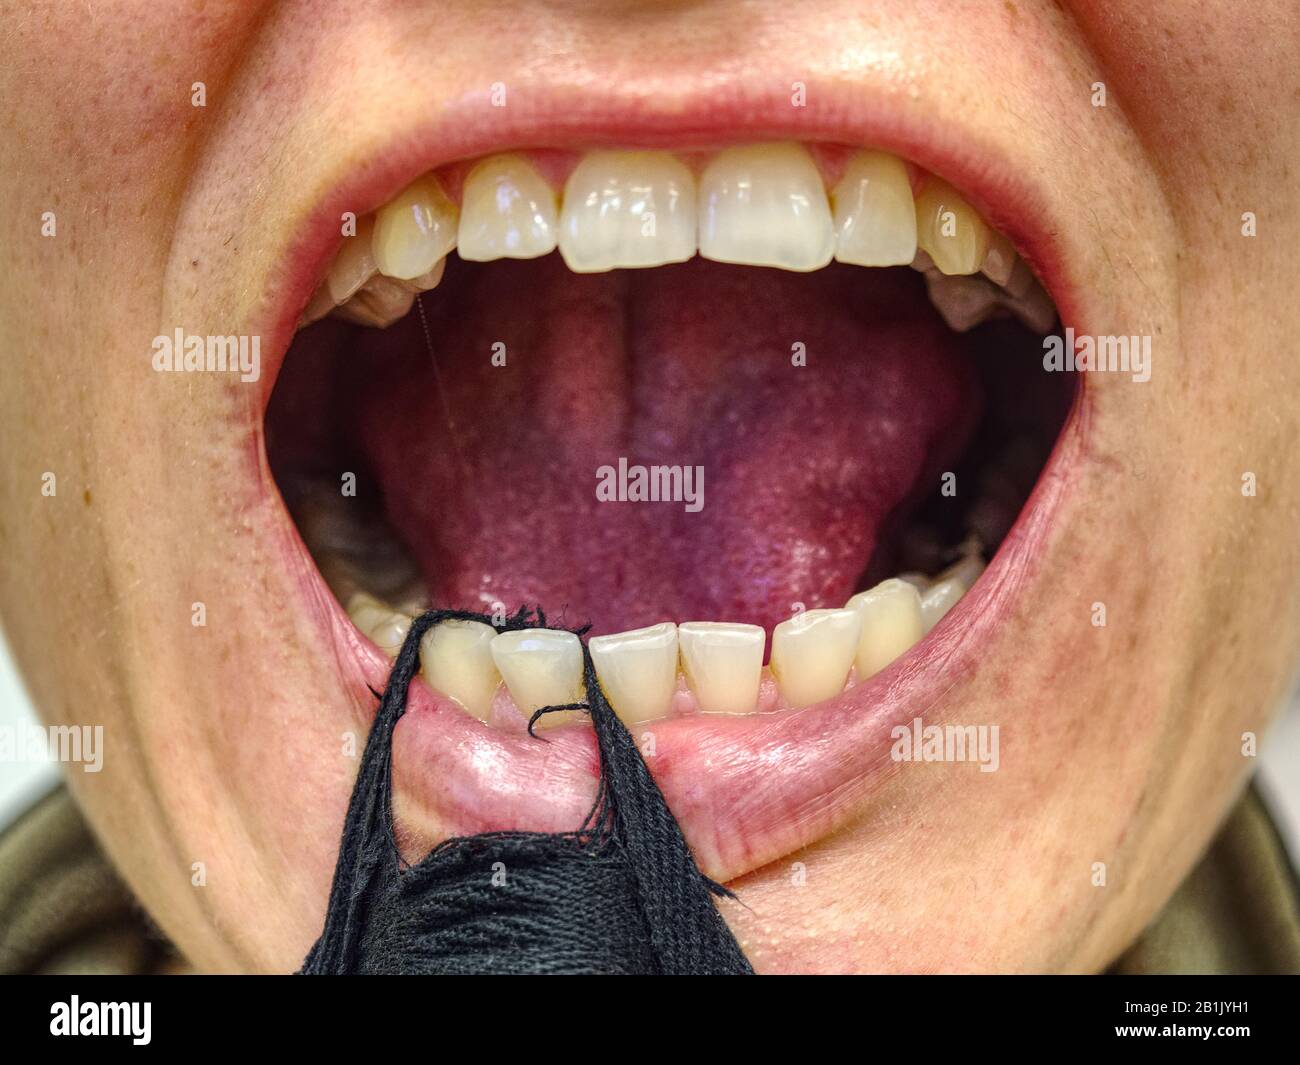 La femme ouvre la bouche avec une bande de textile et montre ses dents coudées et pourries. Lèvre sèche à dents jaunes coudées à bouche ouverte femelle Banque D'Images